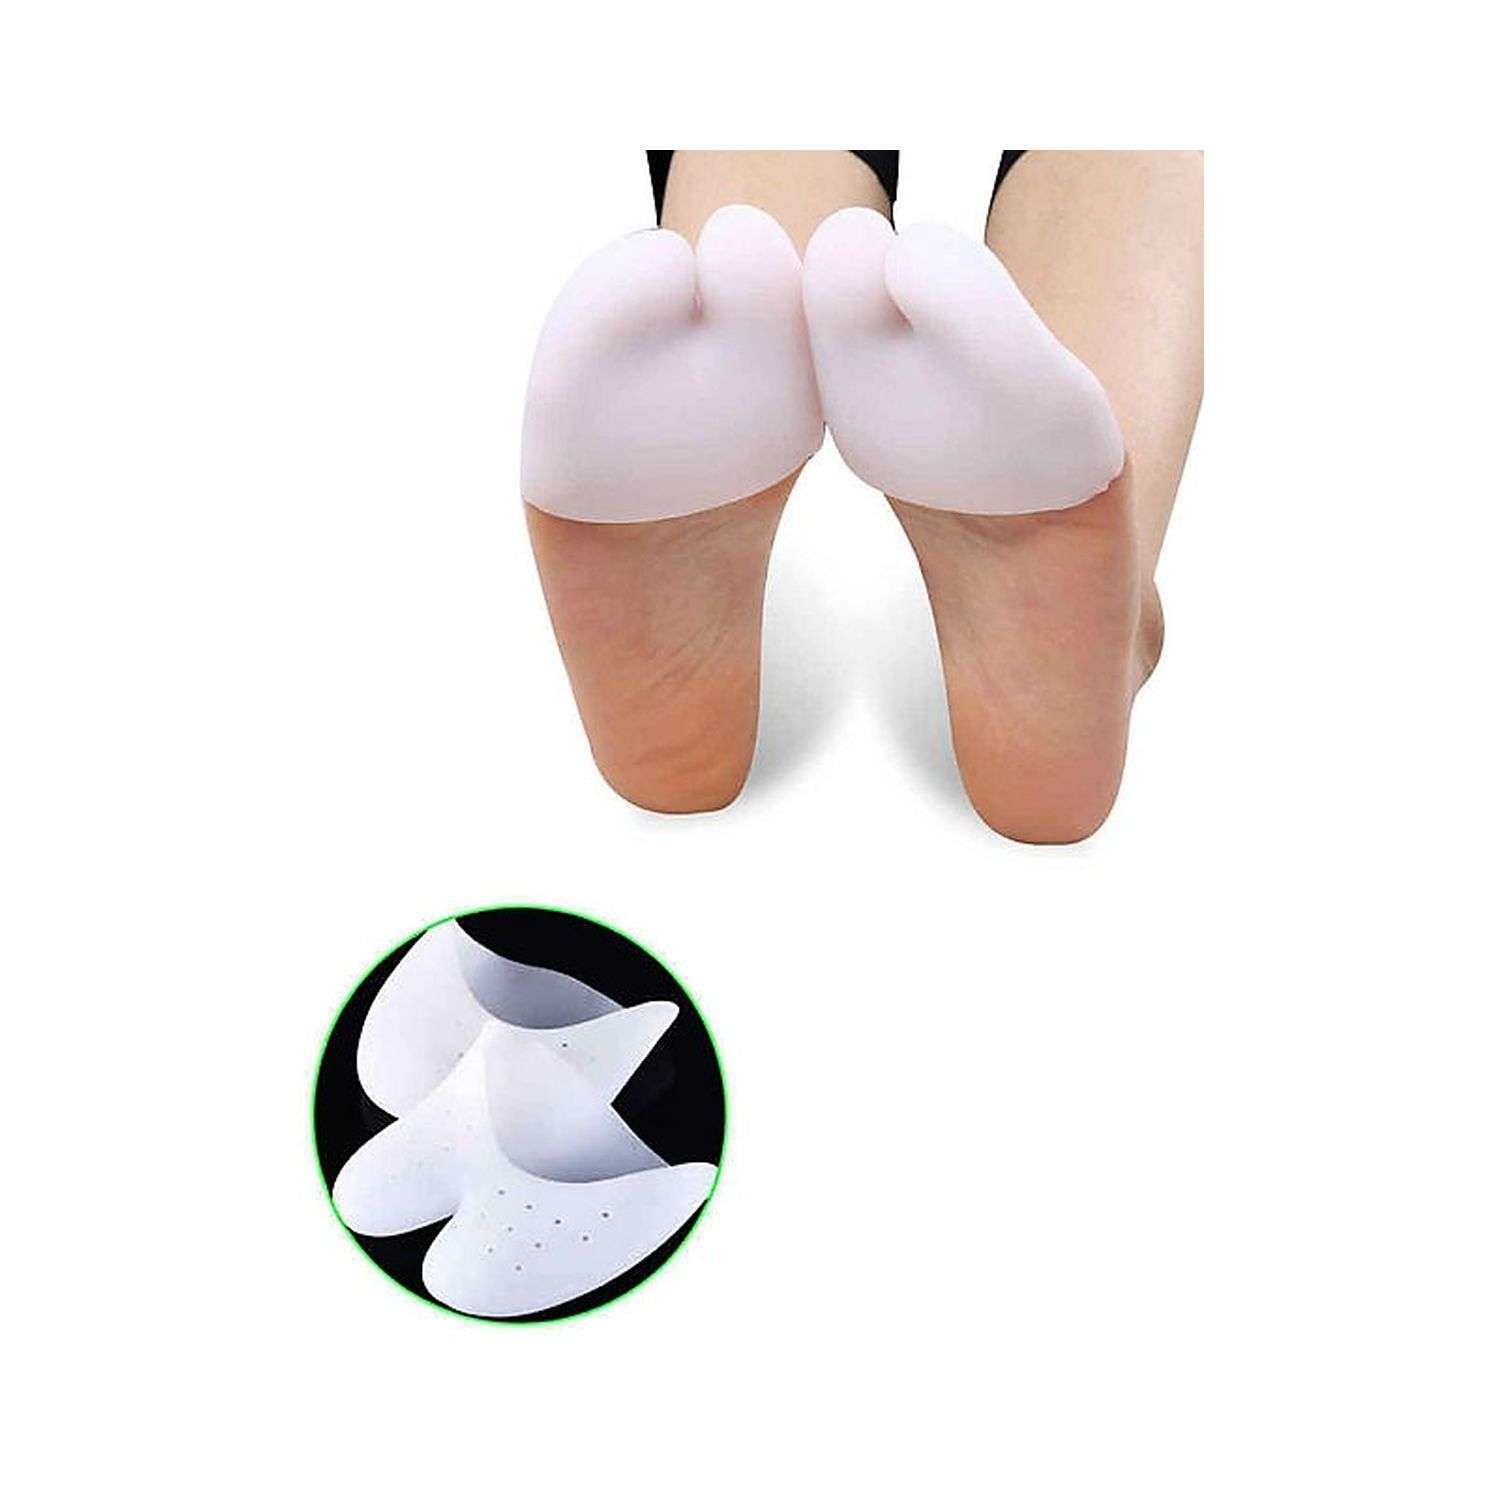 Протектор для пальцев ног Uniglodis Силиконовый белый 2шт - фото 2